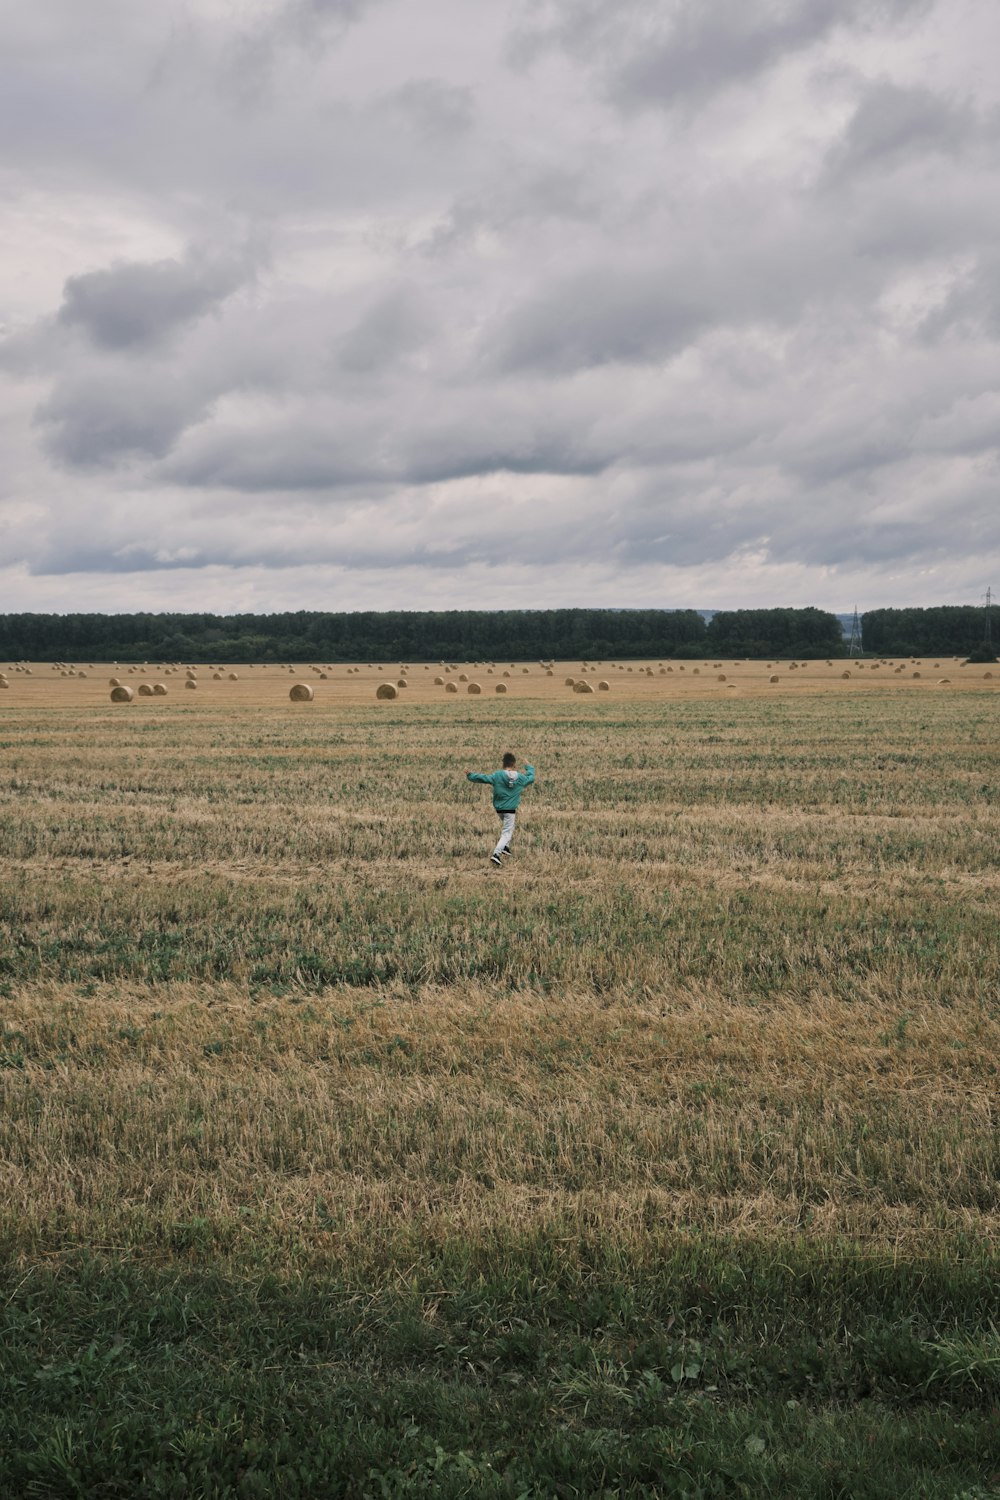 a person walking in a field